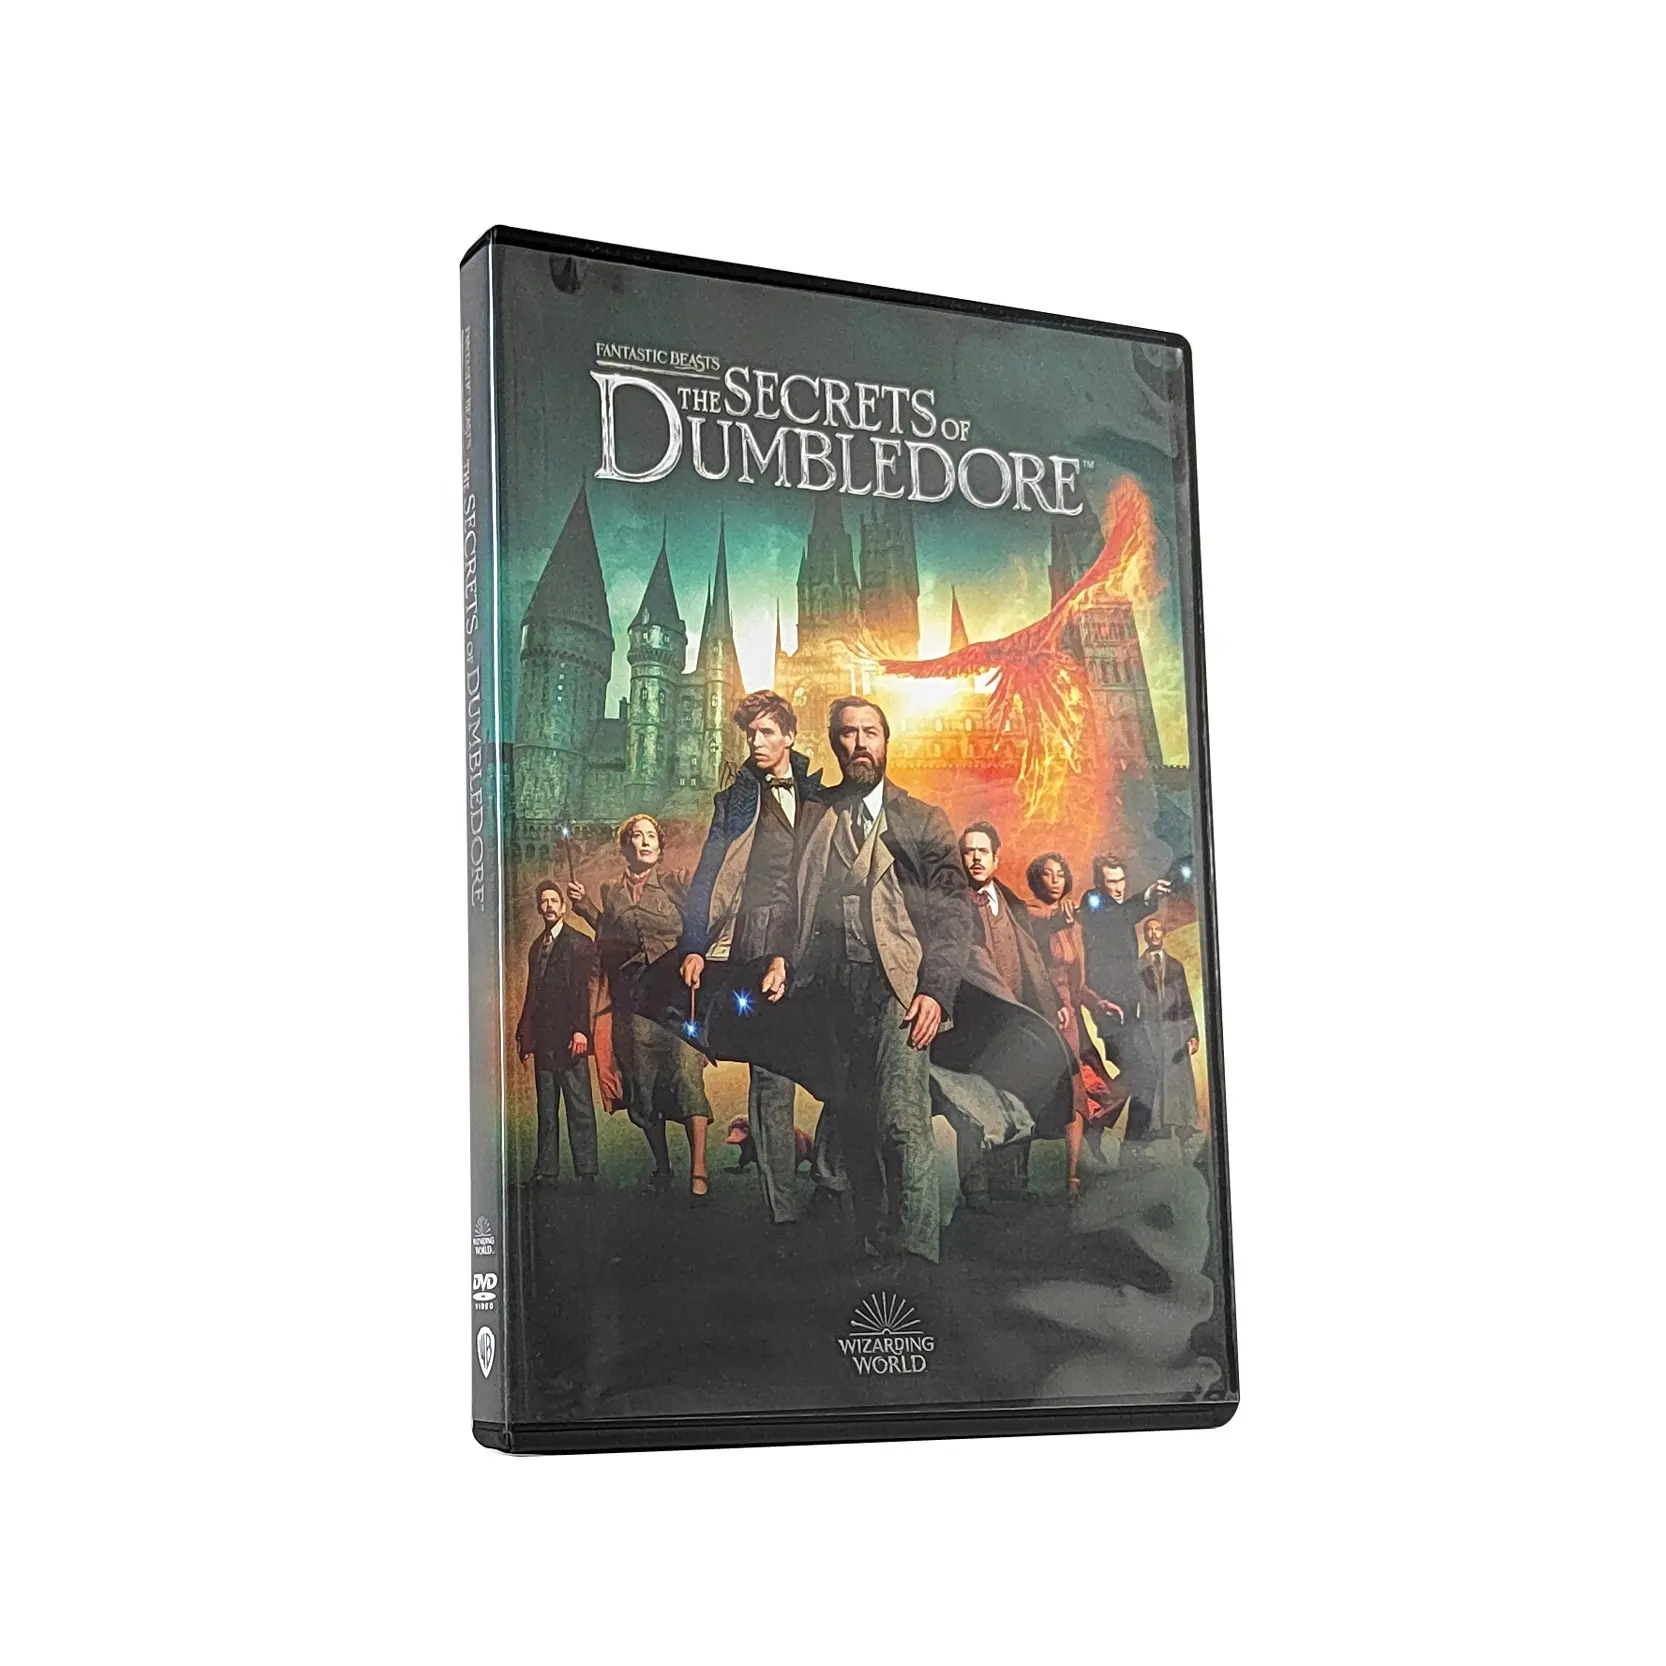 Satın yeni çin ücretsiz kargo fabrika DVD kutulu setleri Film Film Disk çoğaltma fantastik hayvanlar Dumbledore 1 Disk sırları